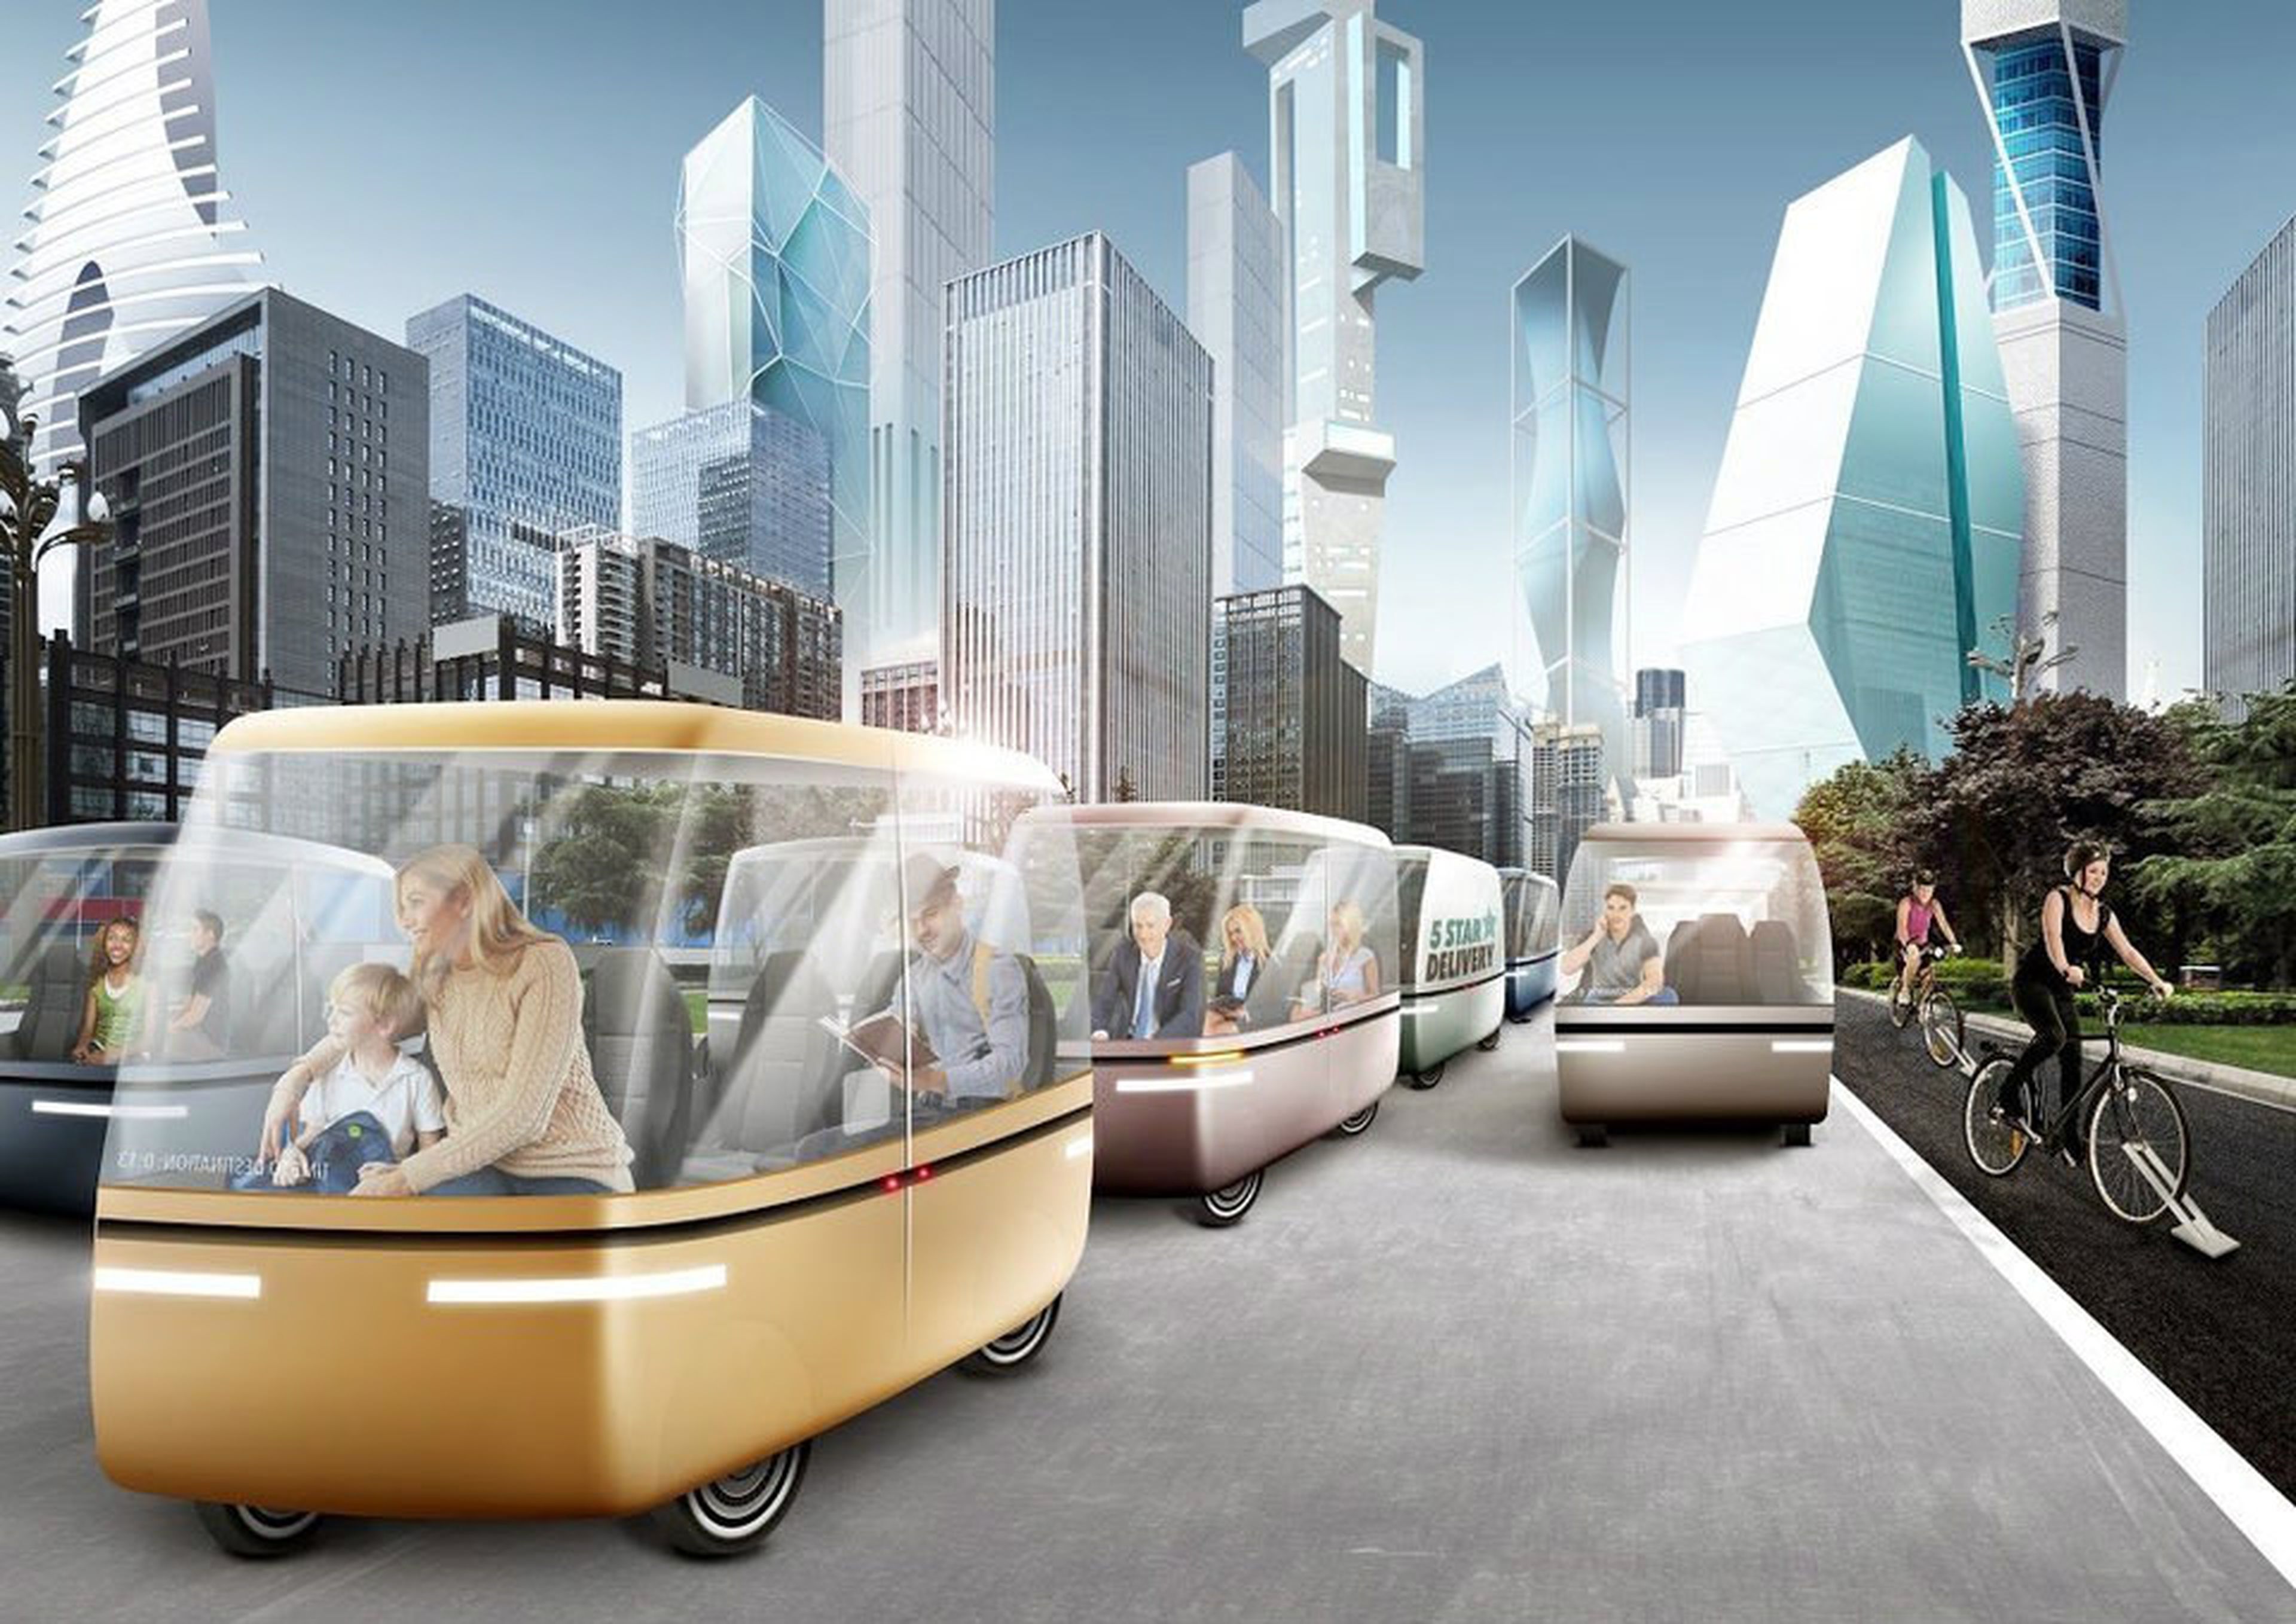 Modern ways life. Транспорт будущего. Город будущего транспорт. Картинки будущего. Инновации в транспорте.